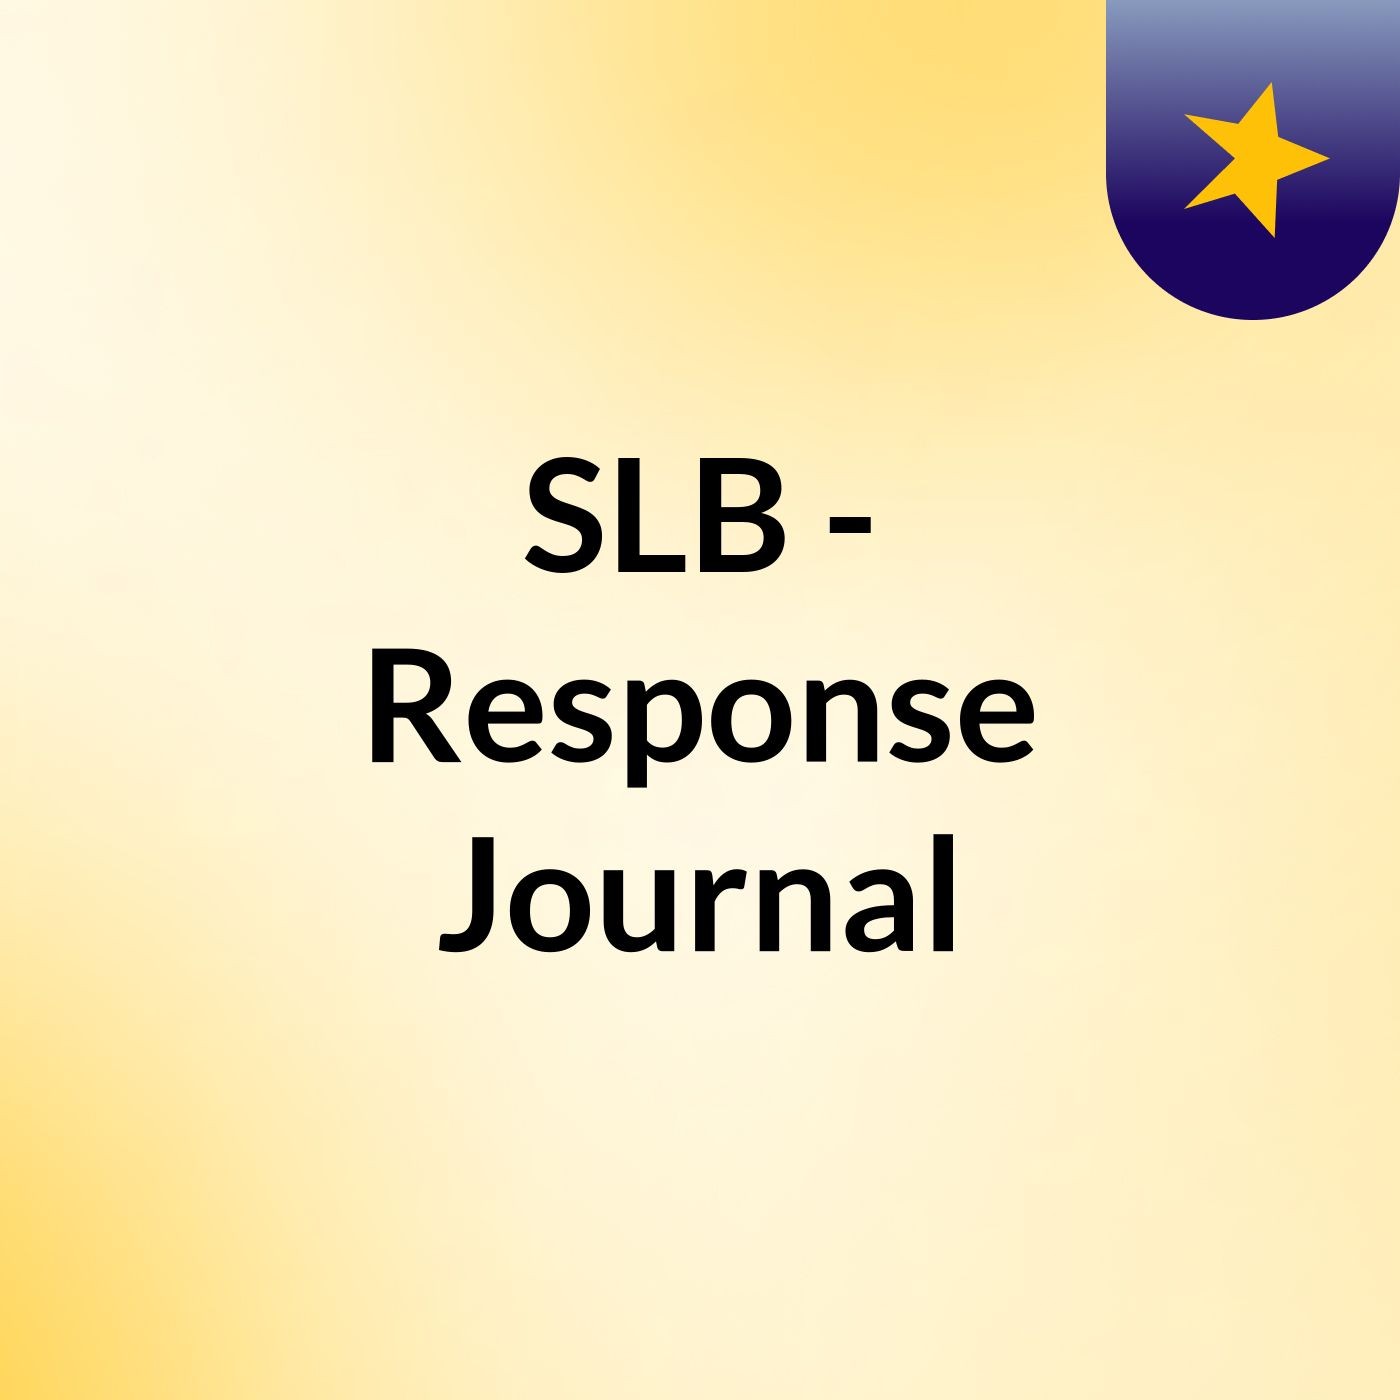 Episode 8 - SLB - Response Journal